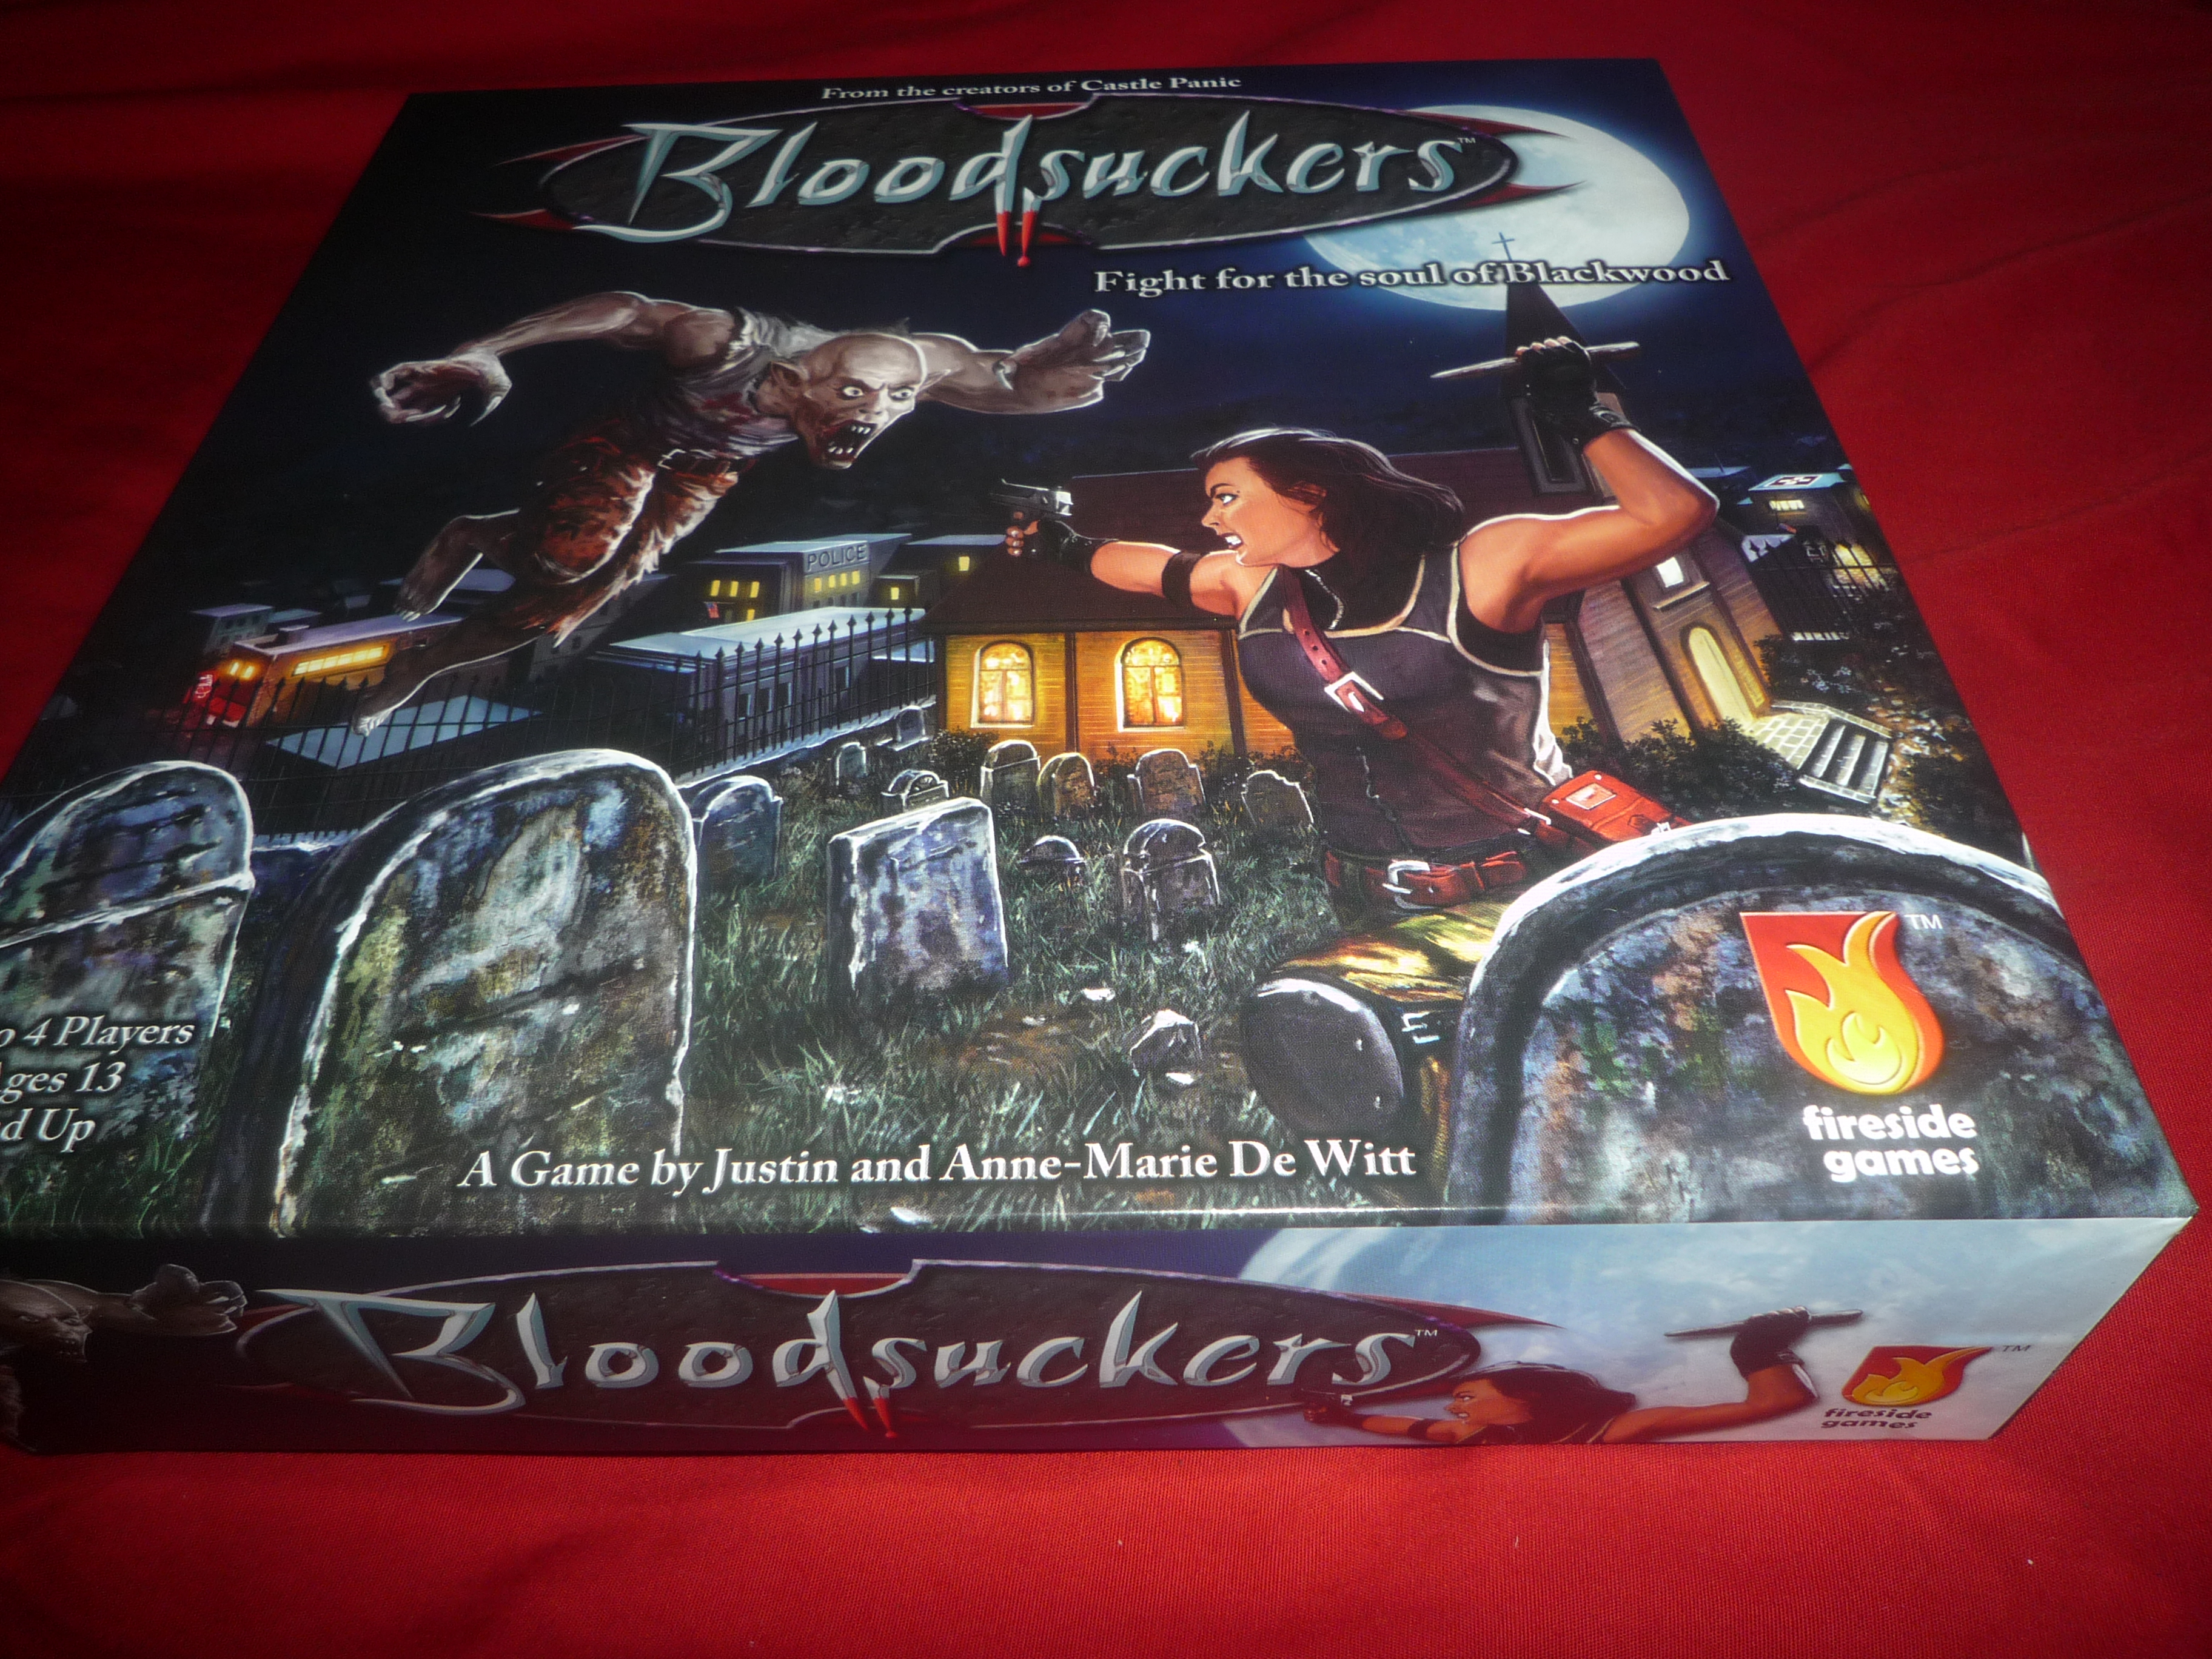 Bloodsuckers Game